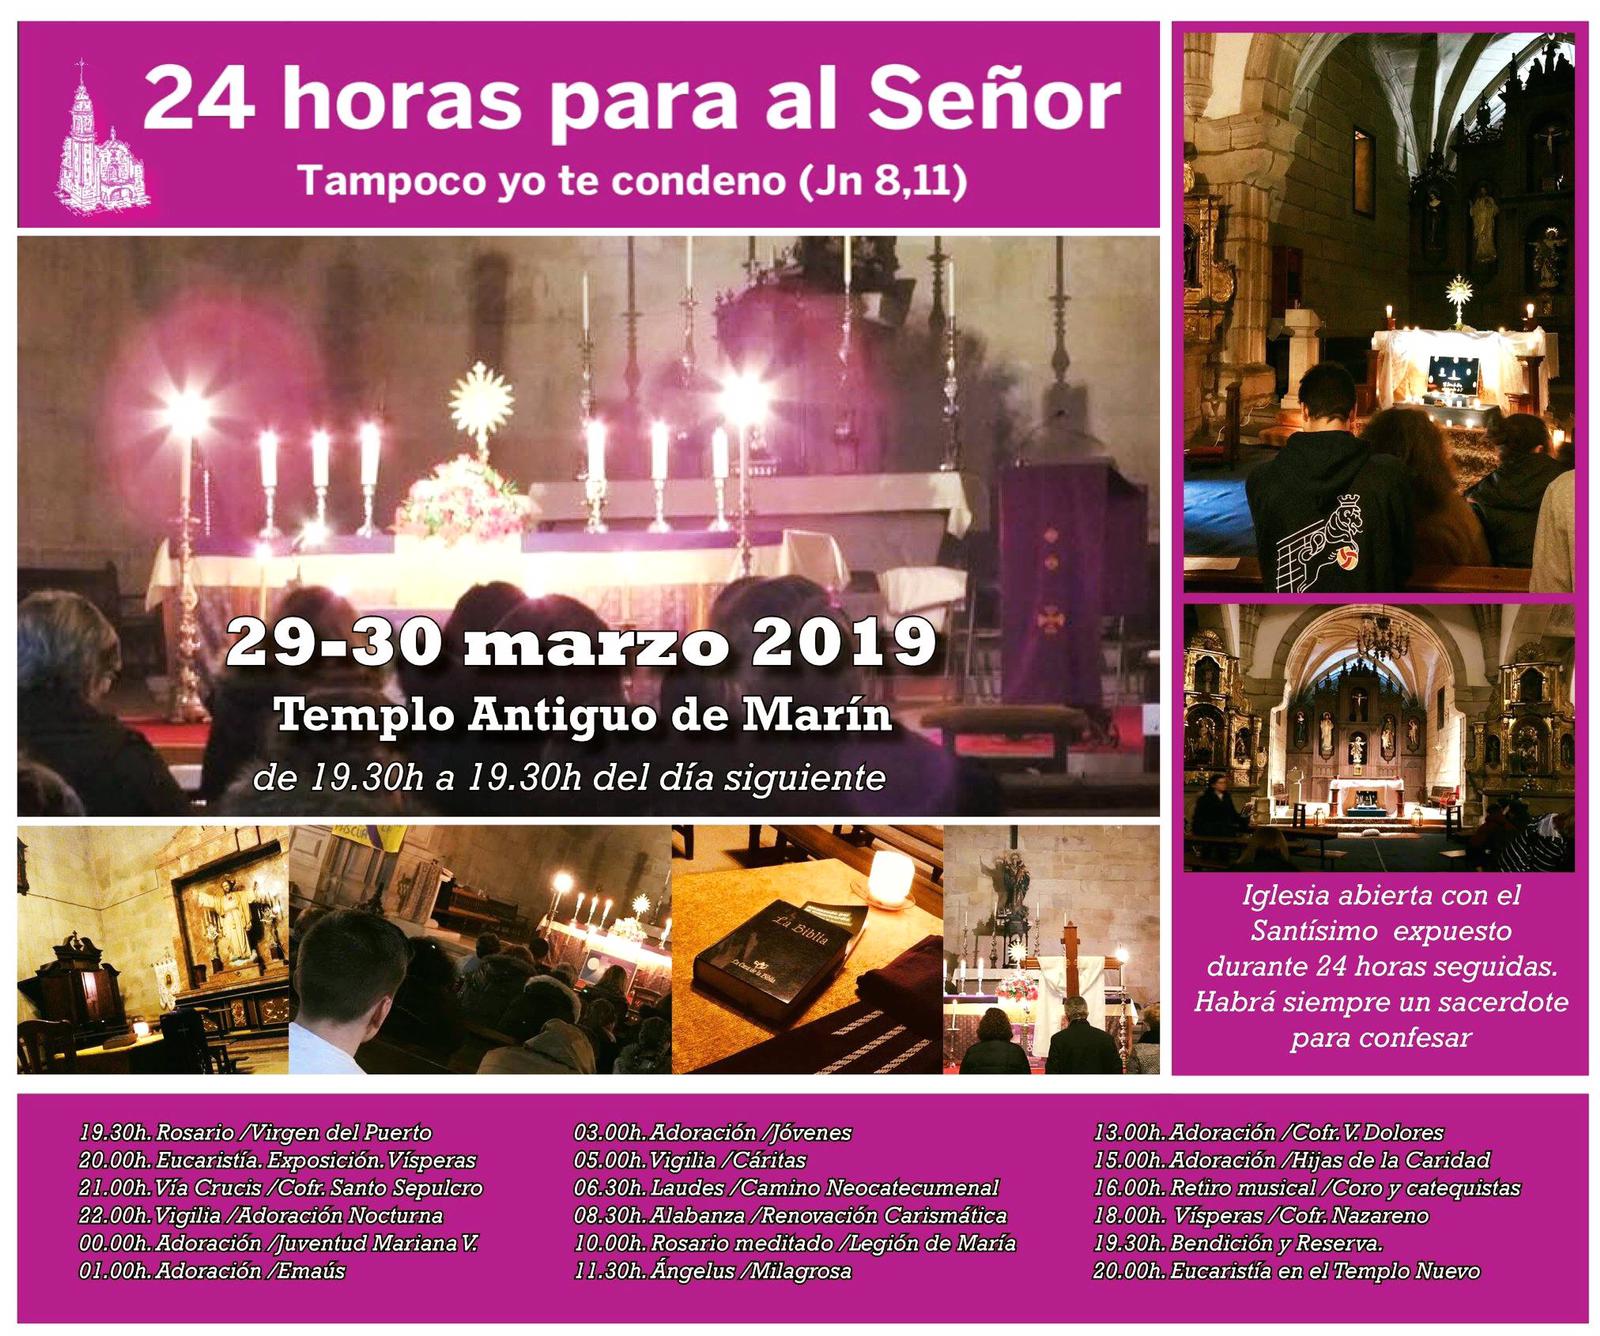 24 horas para el Señor” - Archidiócesis de Santiago de Compostela